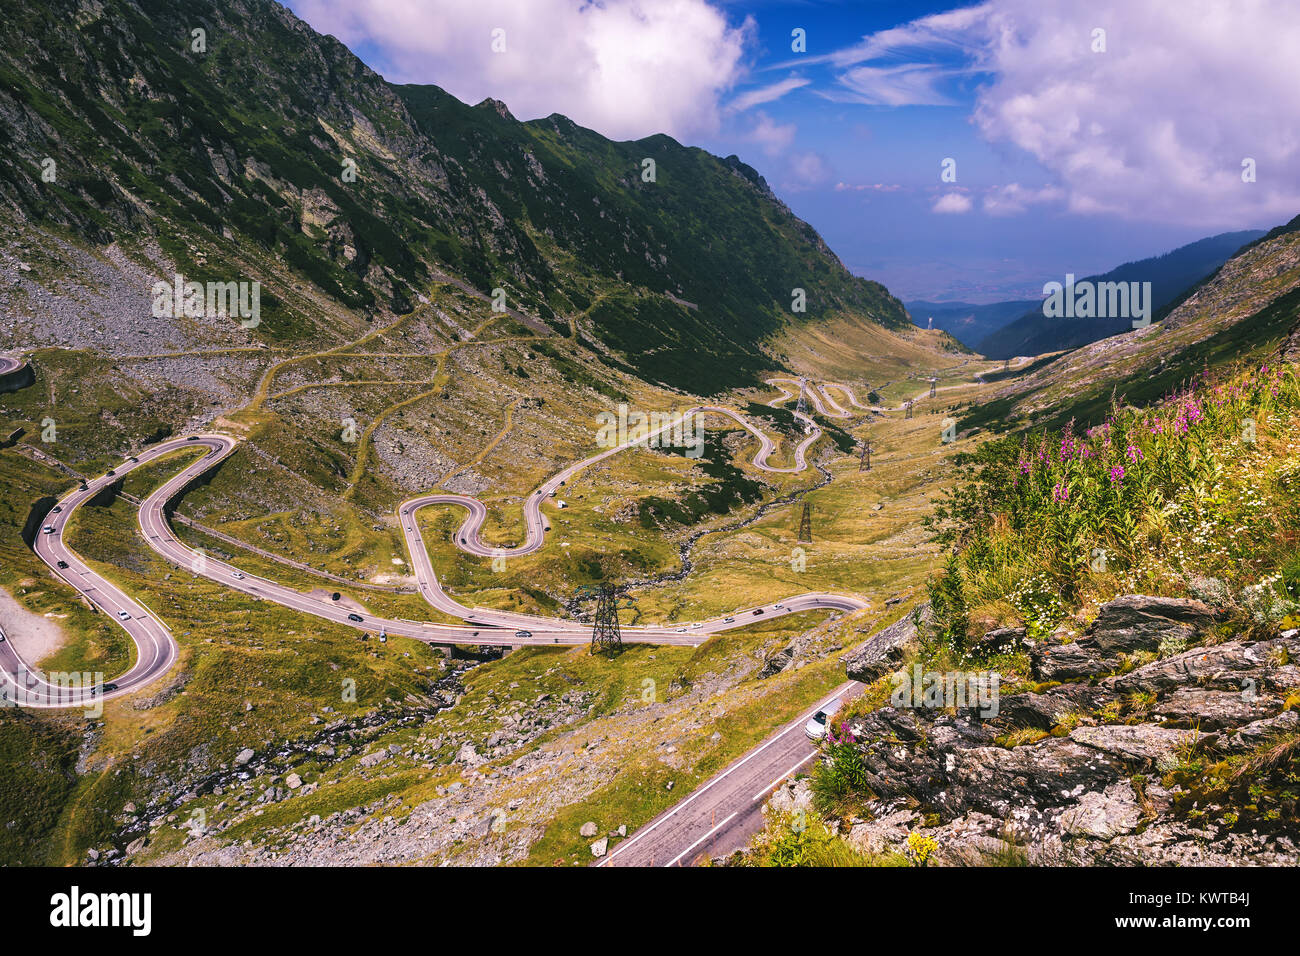 La route Transfagarasan, probablement la plus belle route dans le monde, l'Europe, la Roumanie (Transfagarashan) Banque D'Images